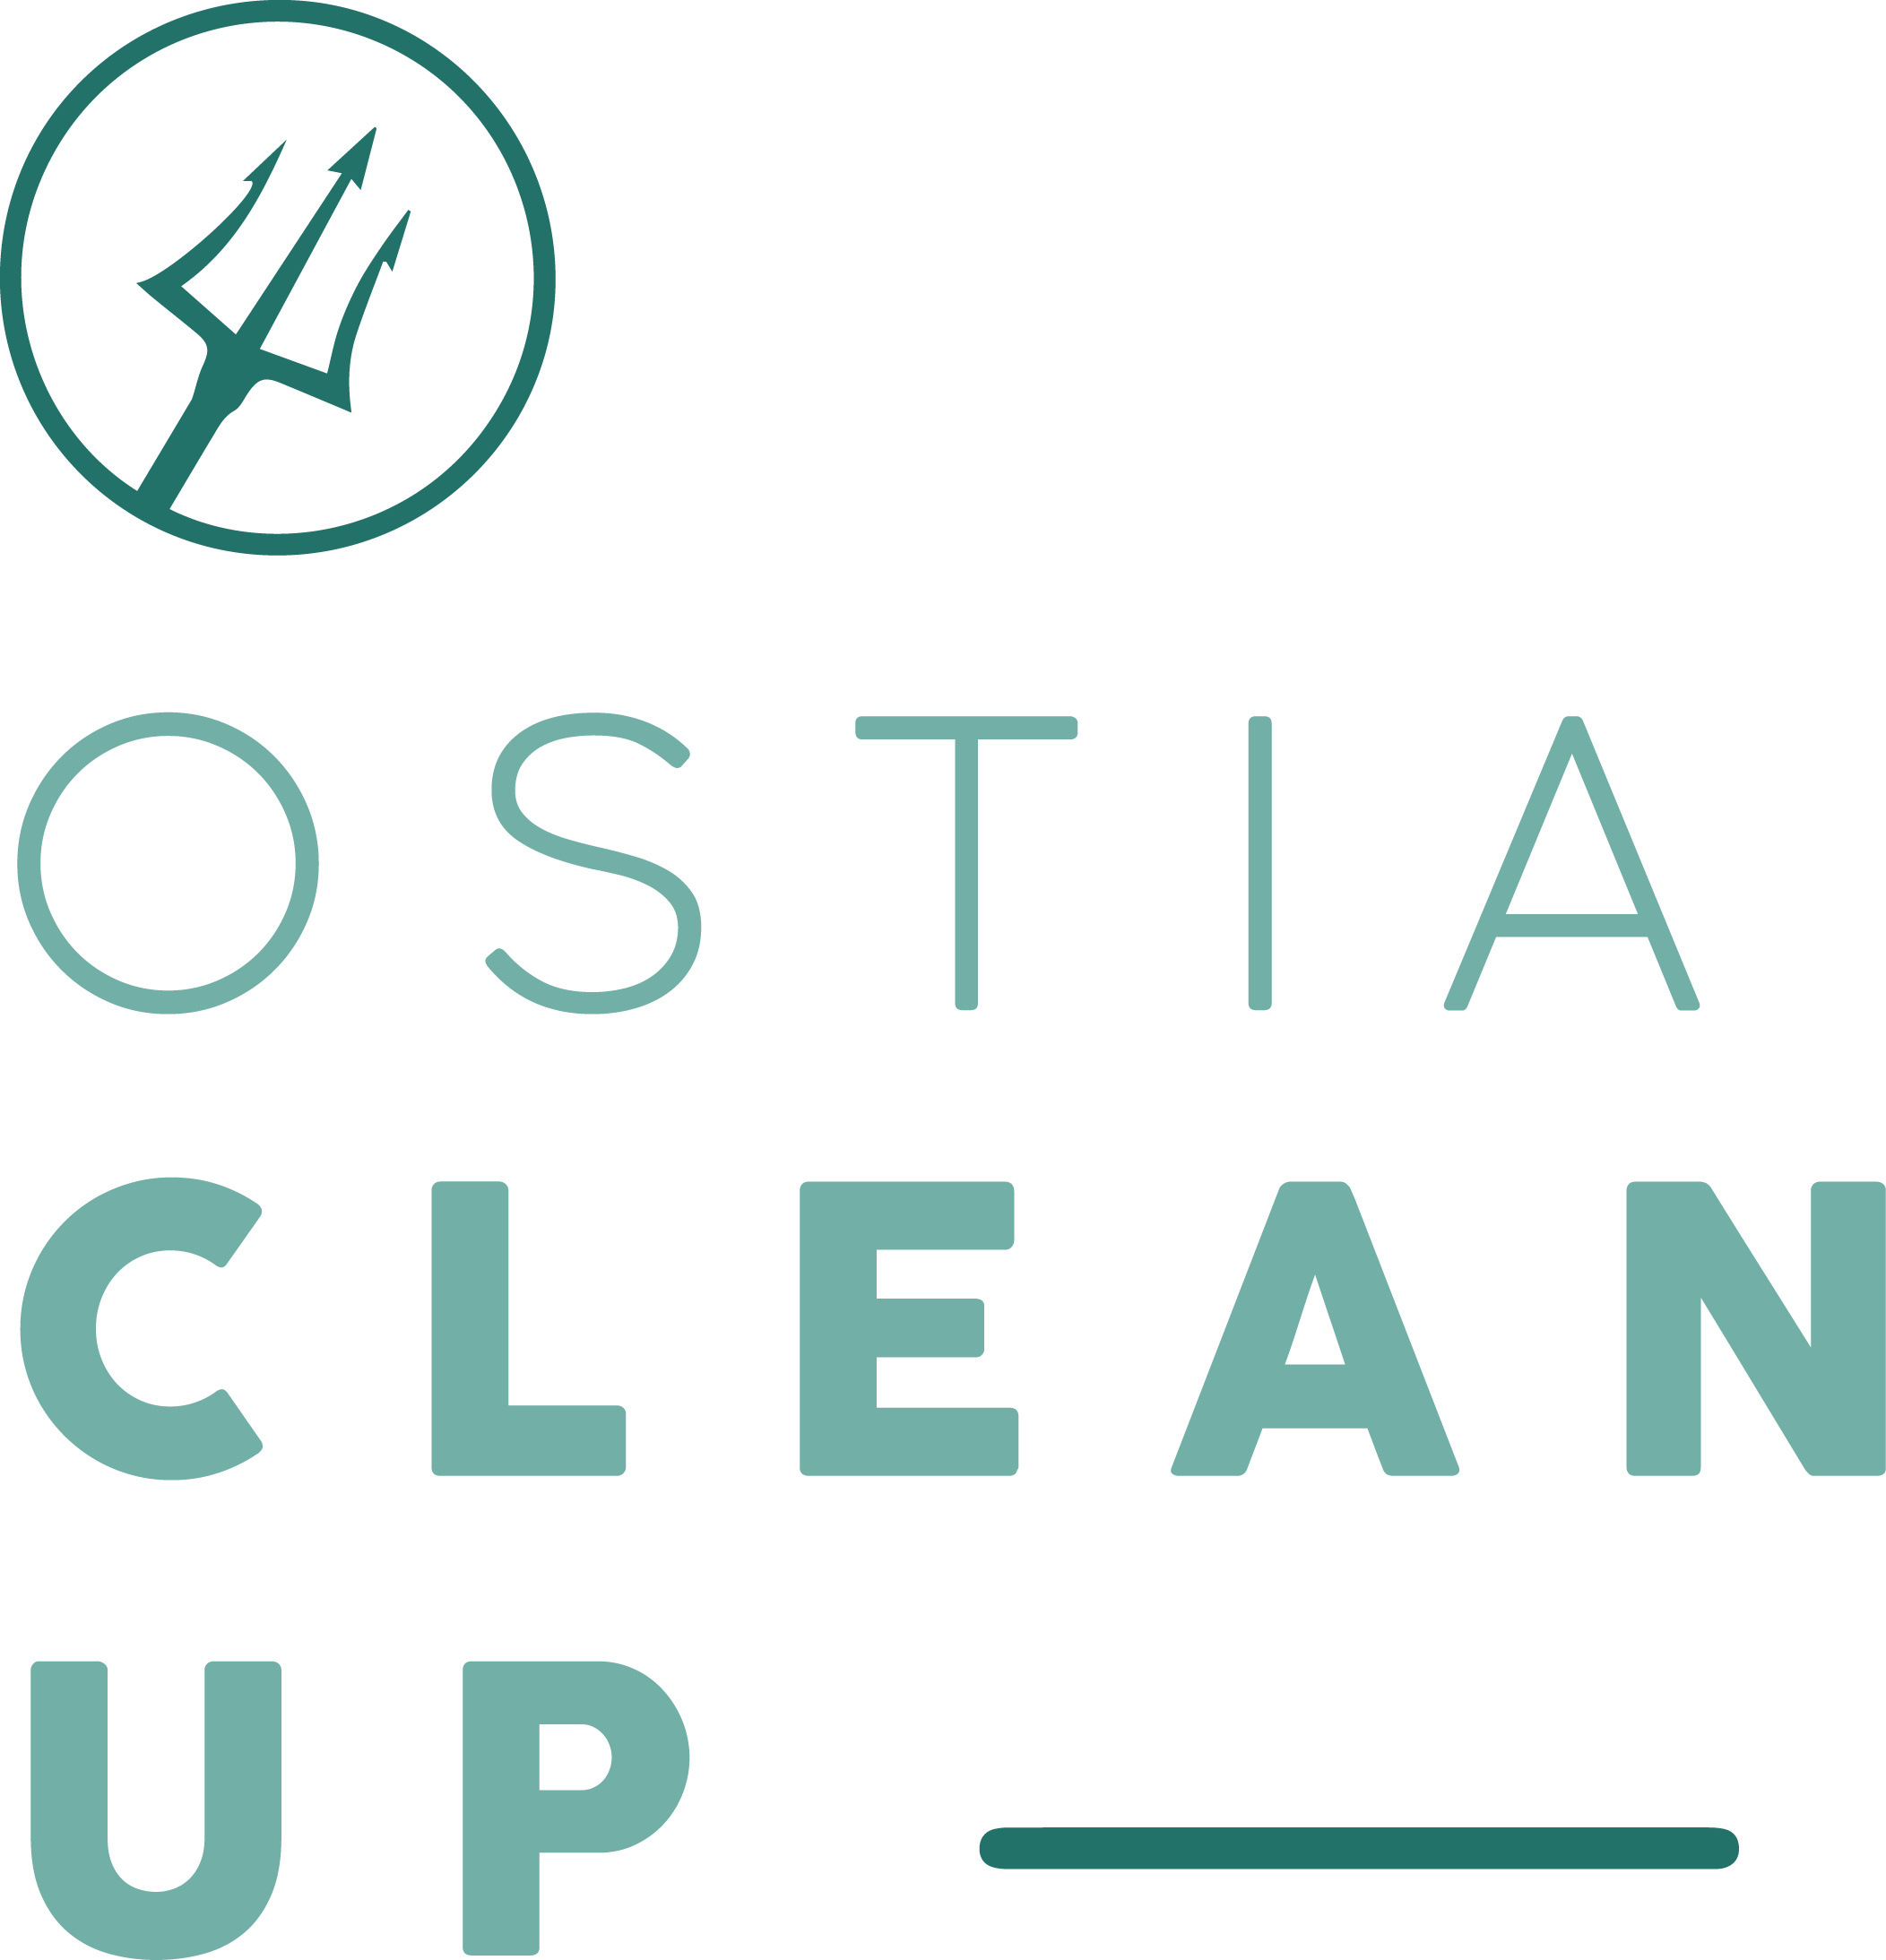 Ostia clean-up CRMpartners